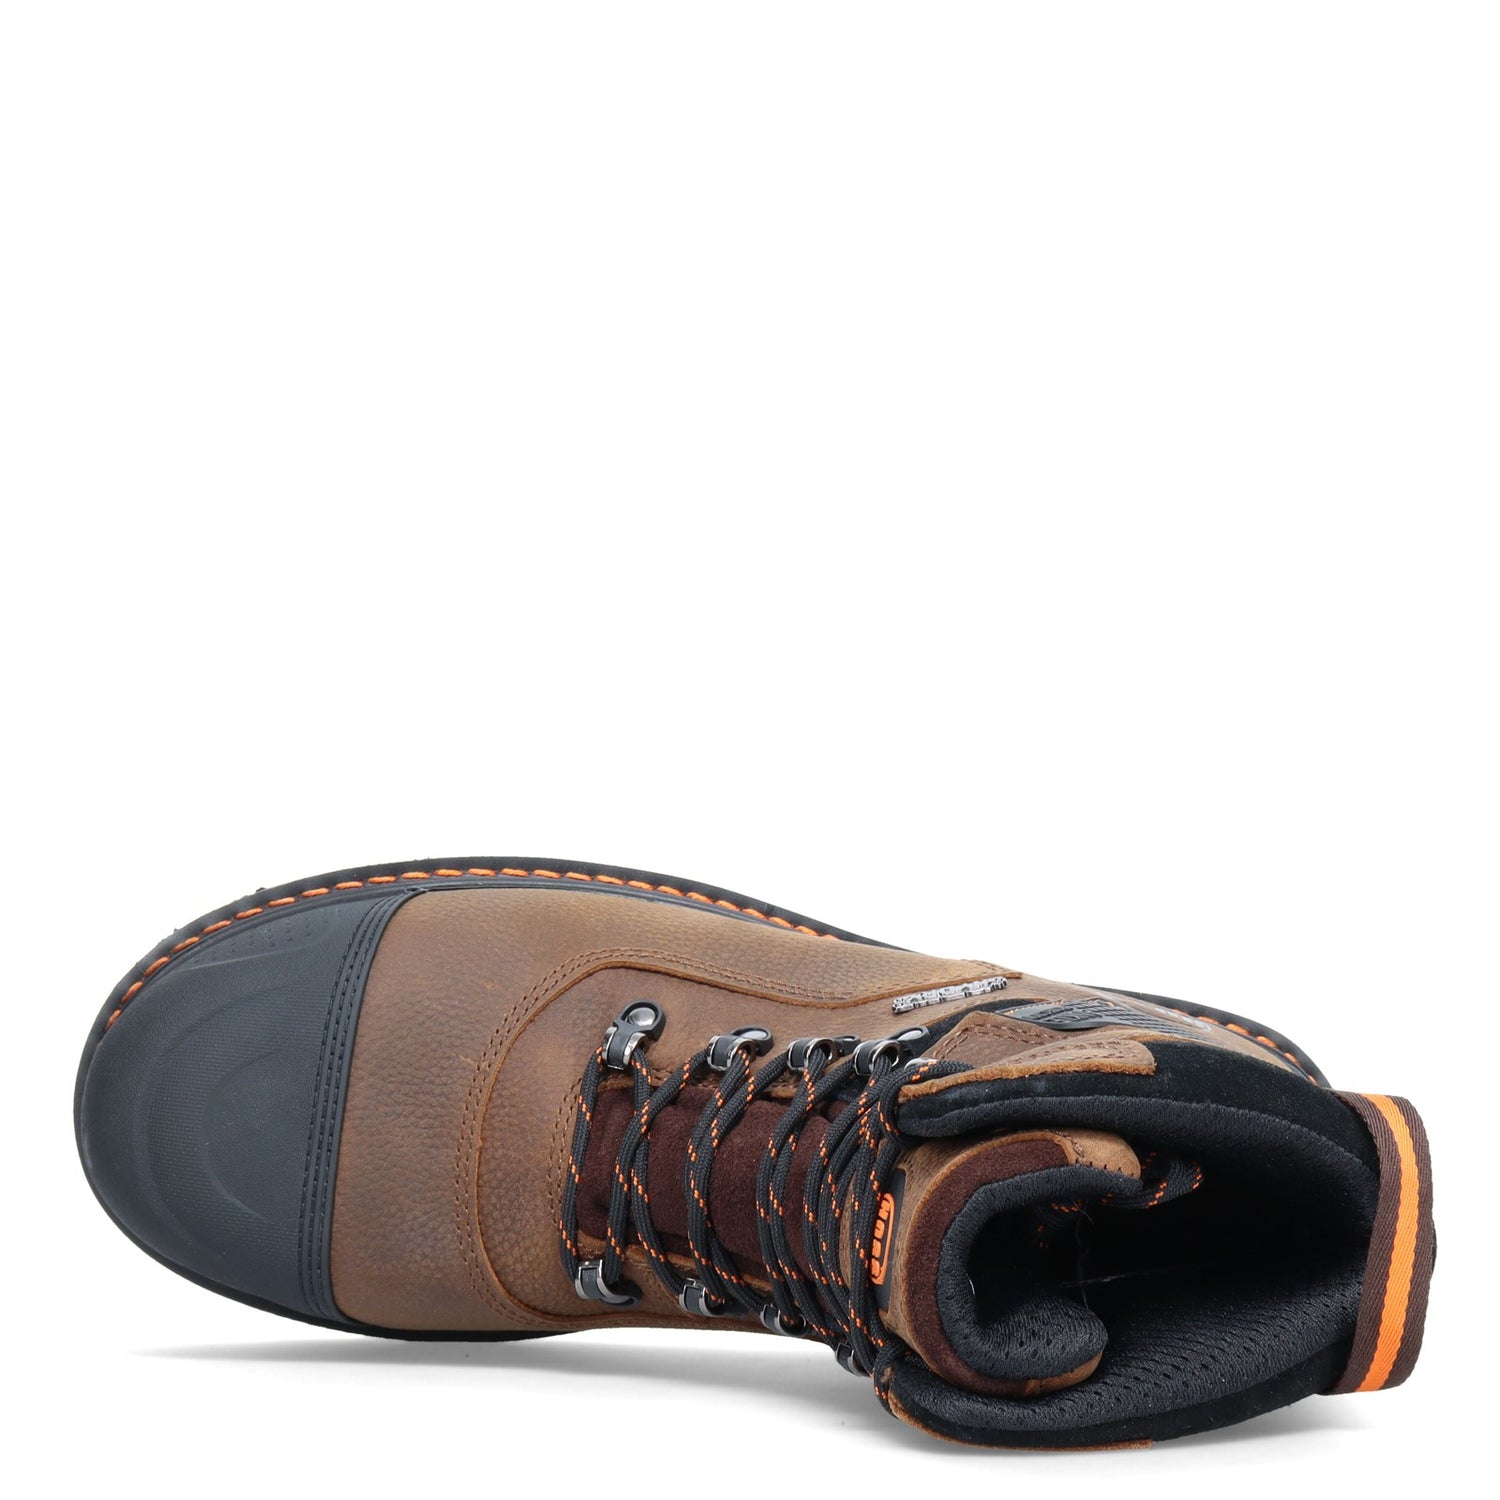 Peltz Shoes  Men's Hoss Range 6in Comp Toe Waterproof Work Boot BROWN 61110